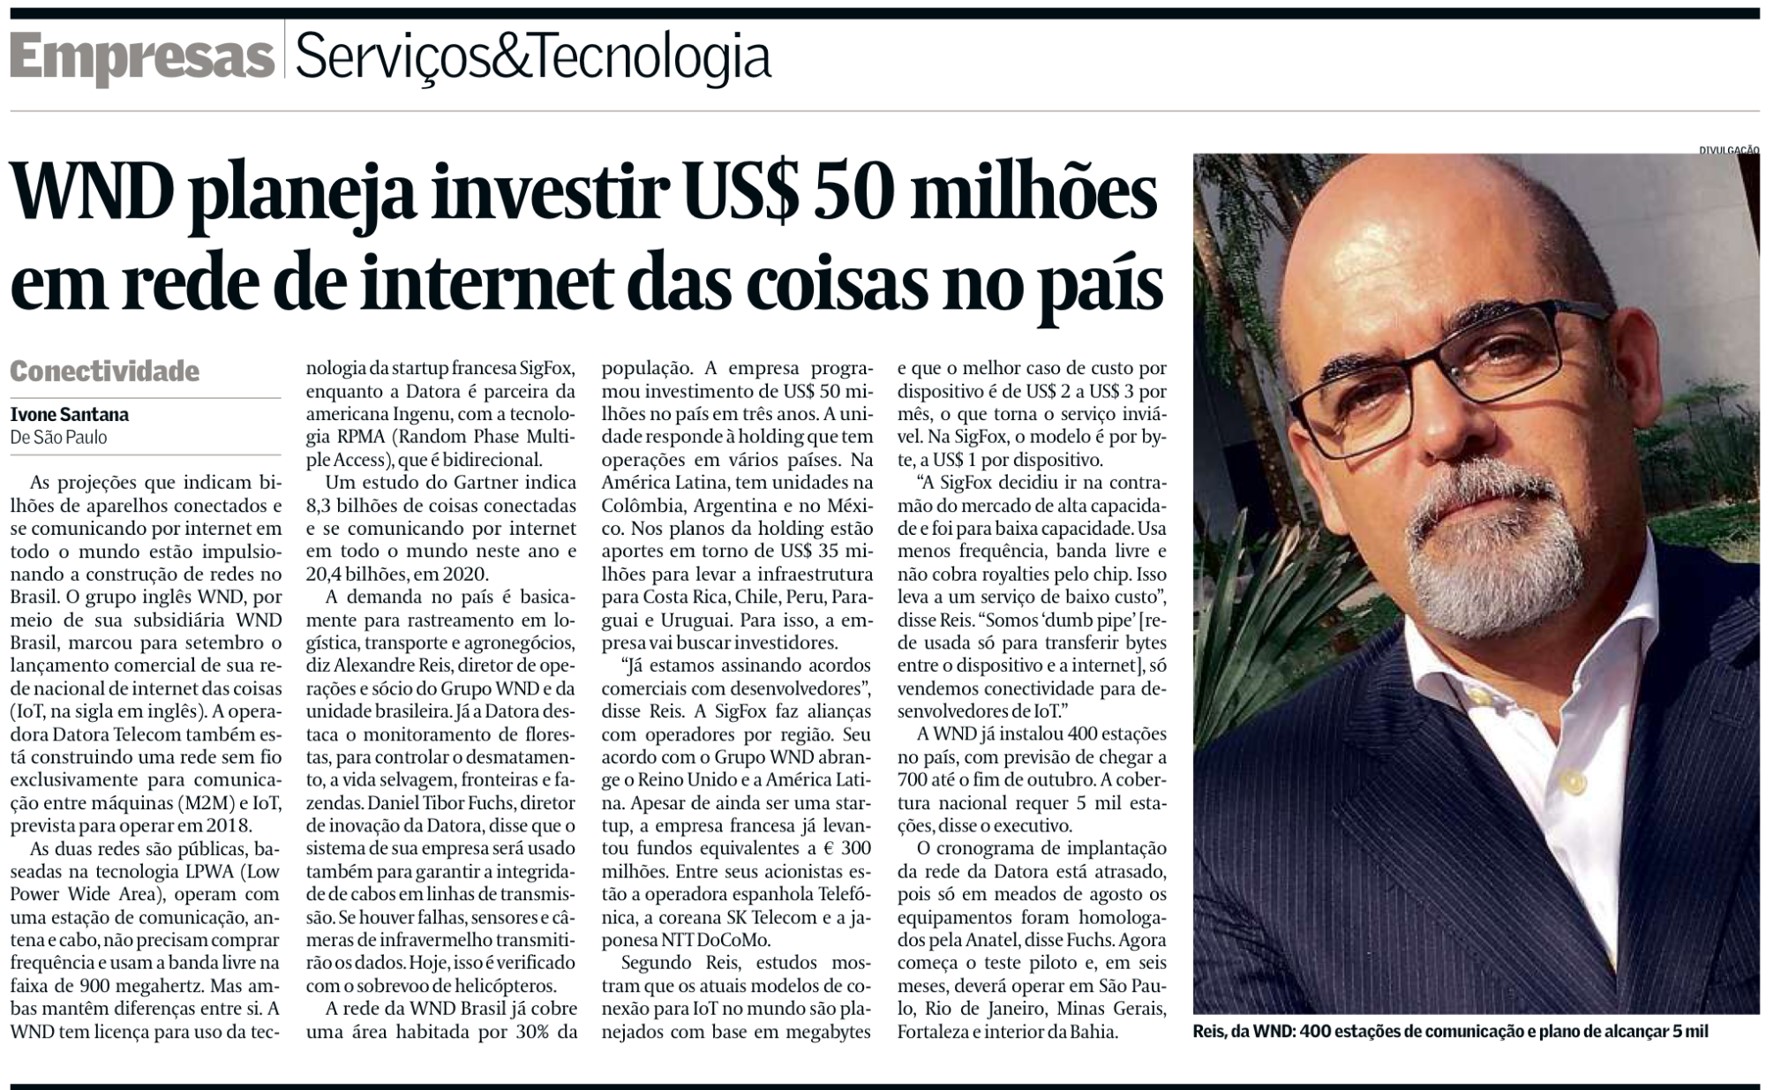 Valor Econômico destaca investimento de US$ 50 milhões da WND Brasil